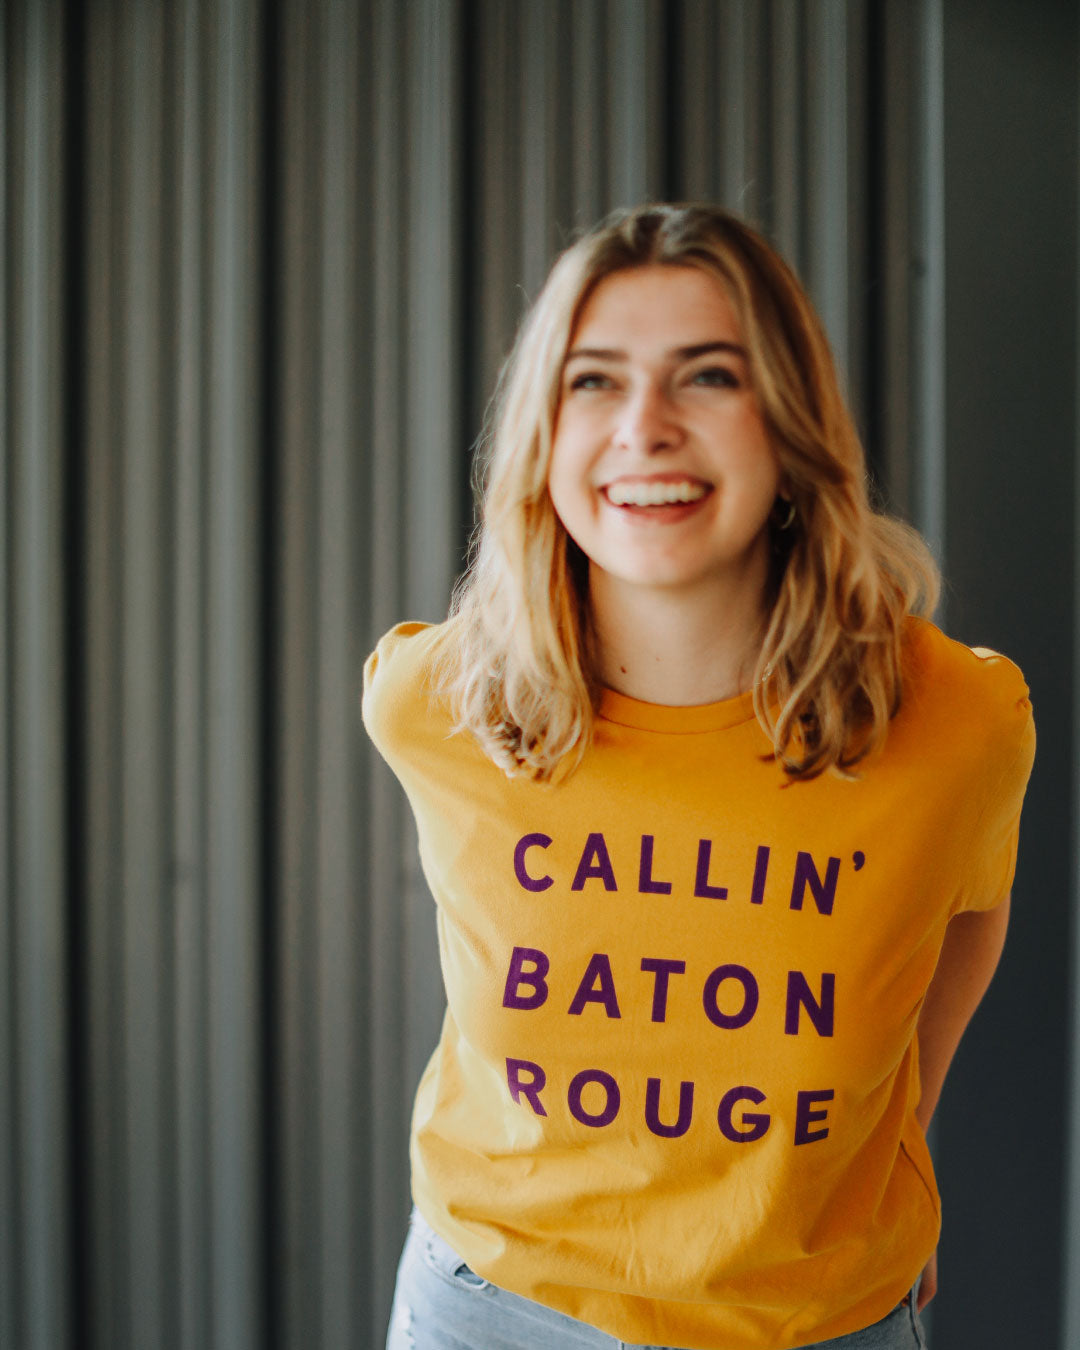 Callin' Baton Rouge T-shirt